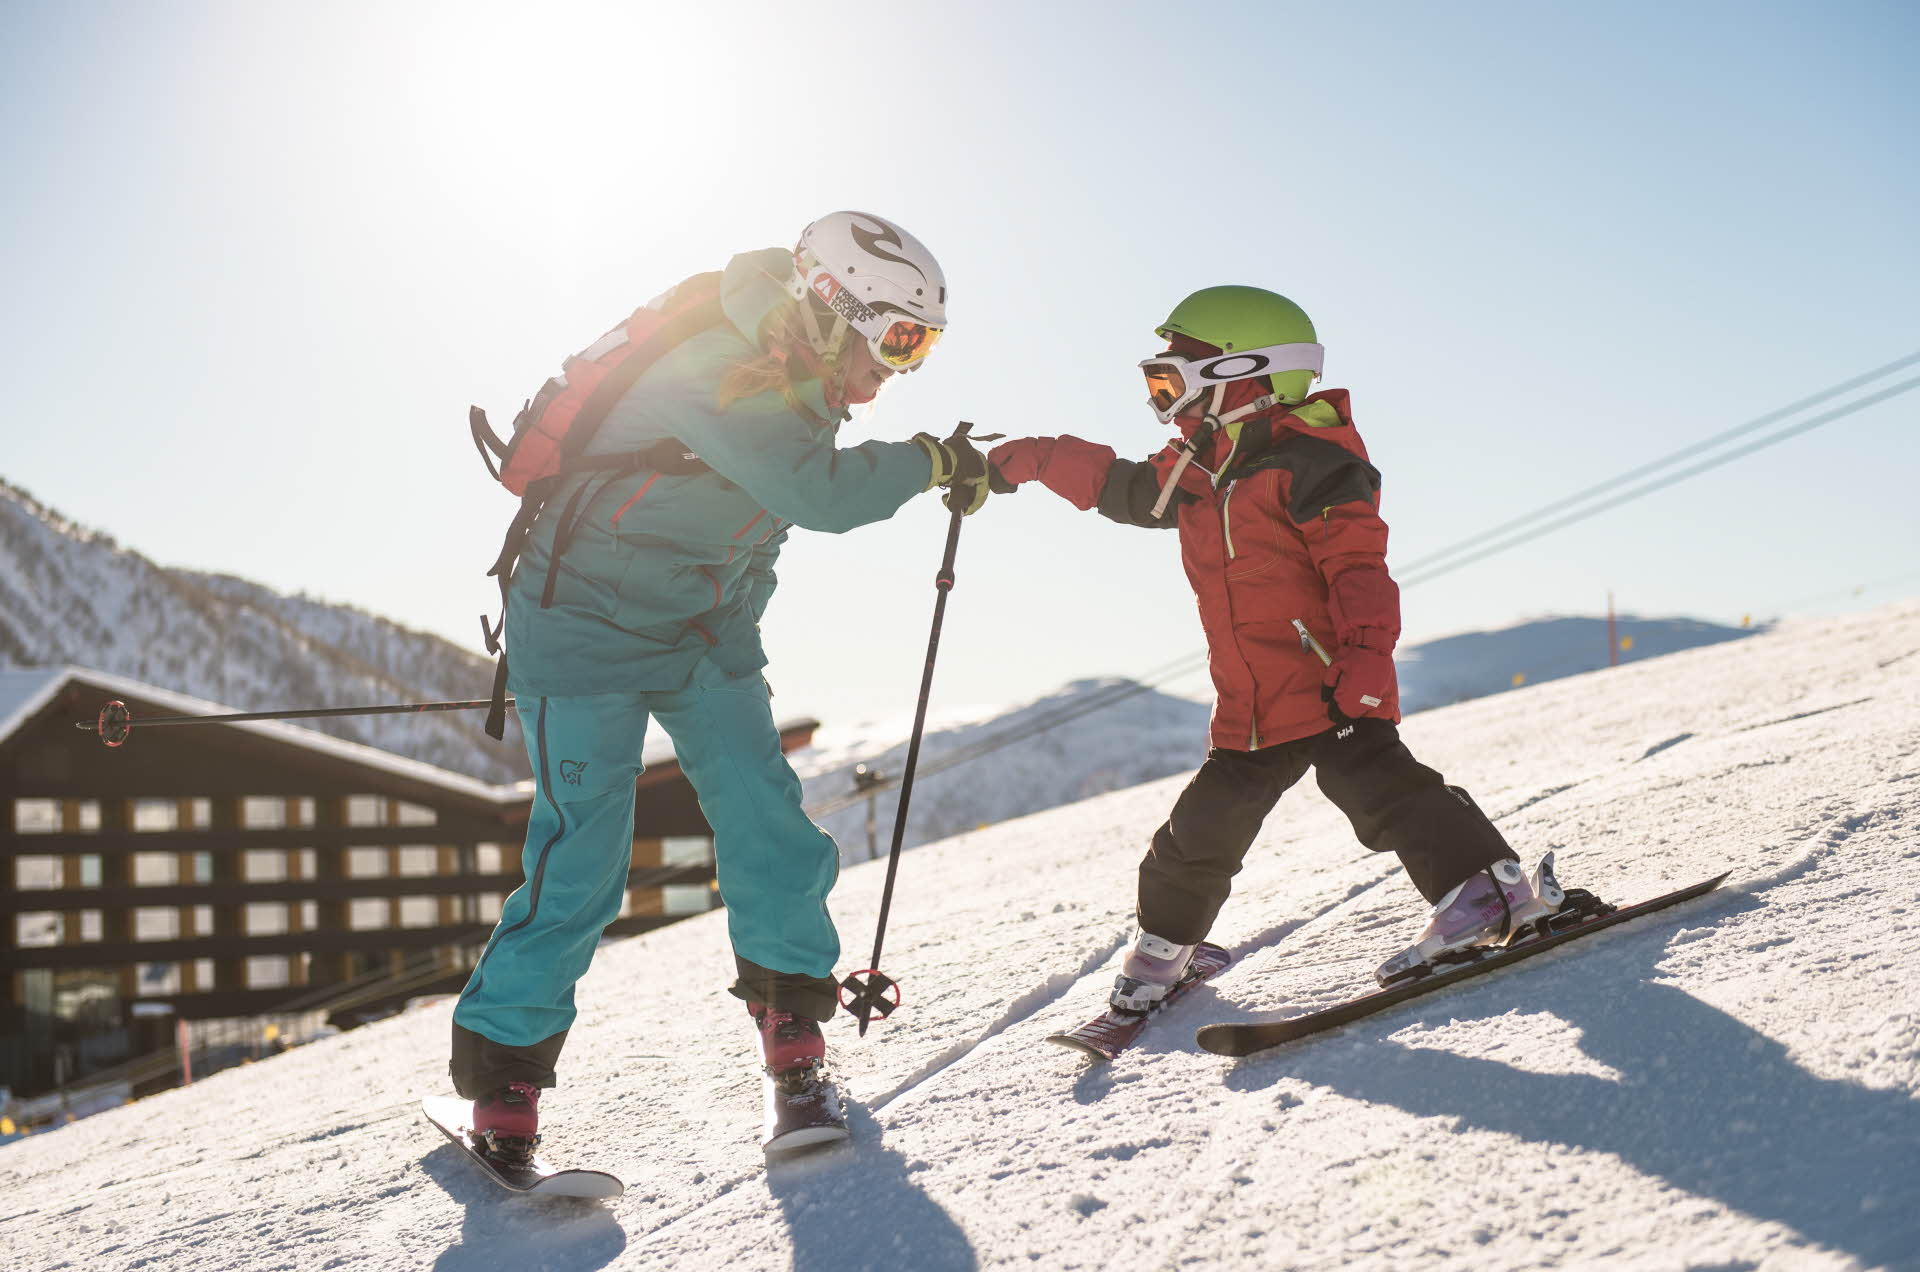 一个大人和一个小孩在滑雪坡上击拳。背景中是迈克达林酒店 (Myrkdalen Hotel)。